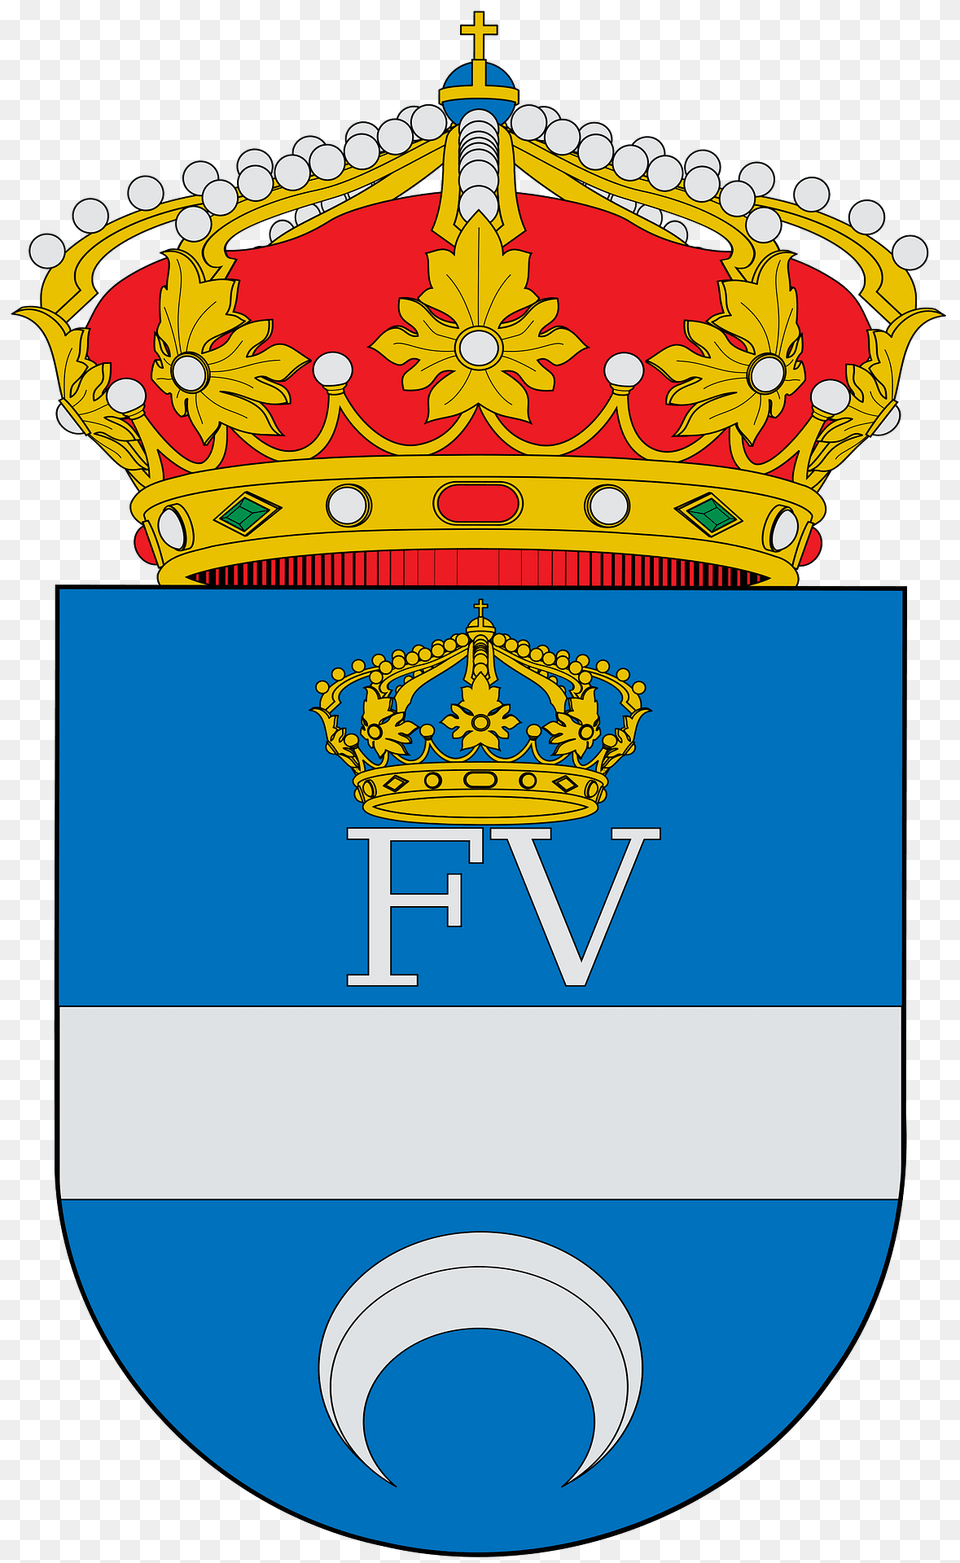 Escudo De Olas Del Rey Clipart, Logo, Emblem, Symbol, Bulldozer Free Transparent Png